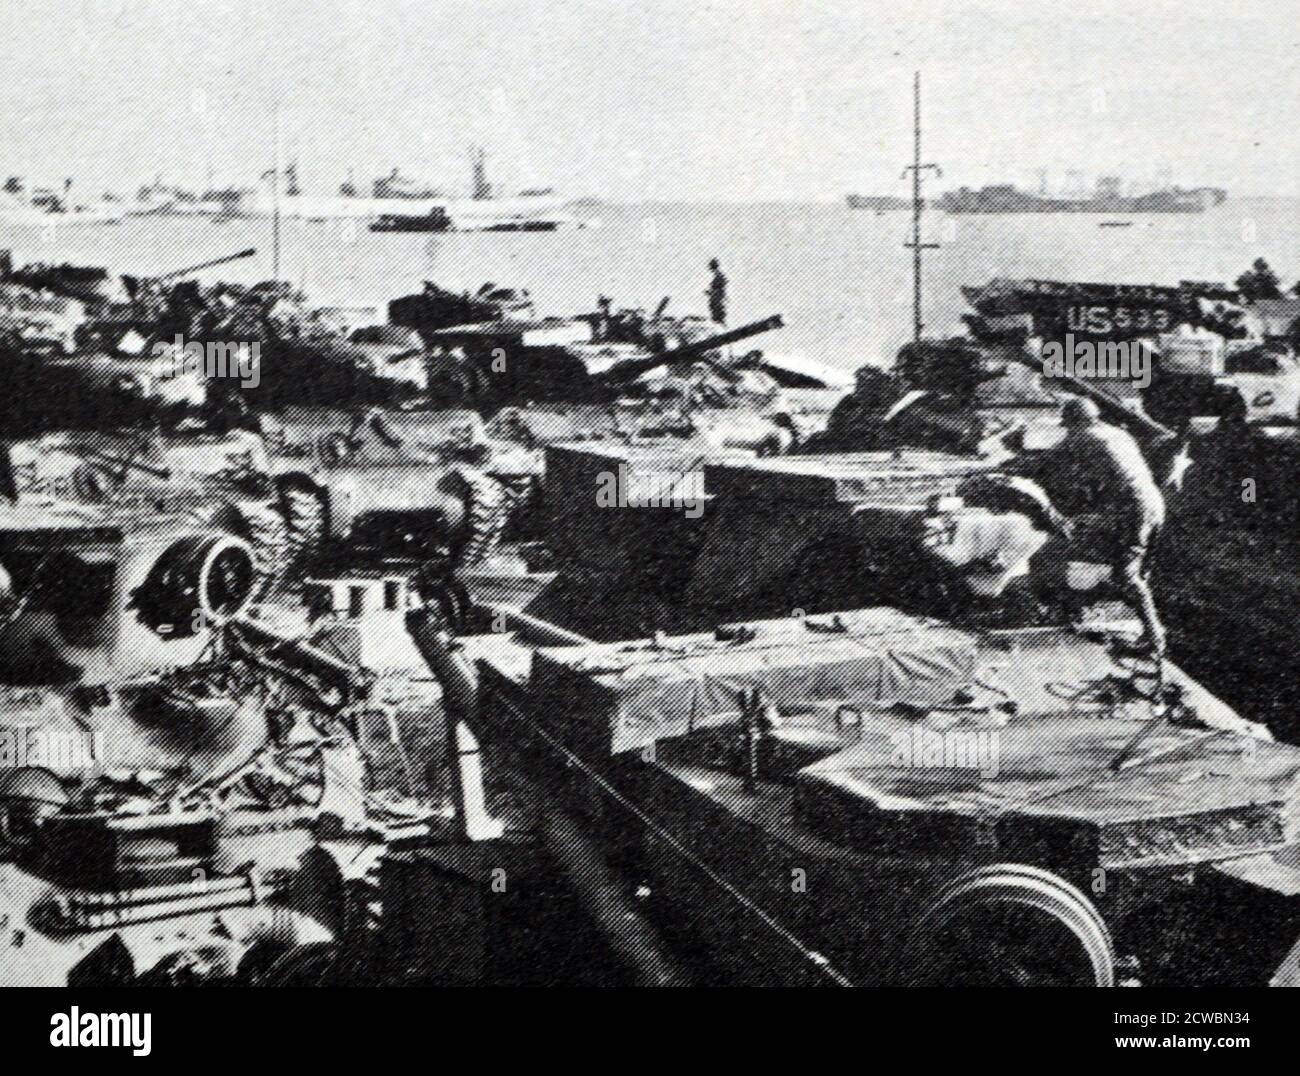 Photographie en noir et blanc de la Seconde Guerre mondiale (1939-1945) montrant l'équipement militaire américain arrivant à Cherbourg. Banque D'Images